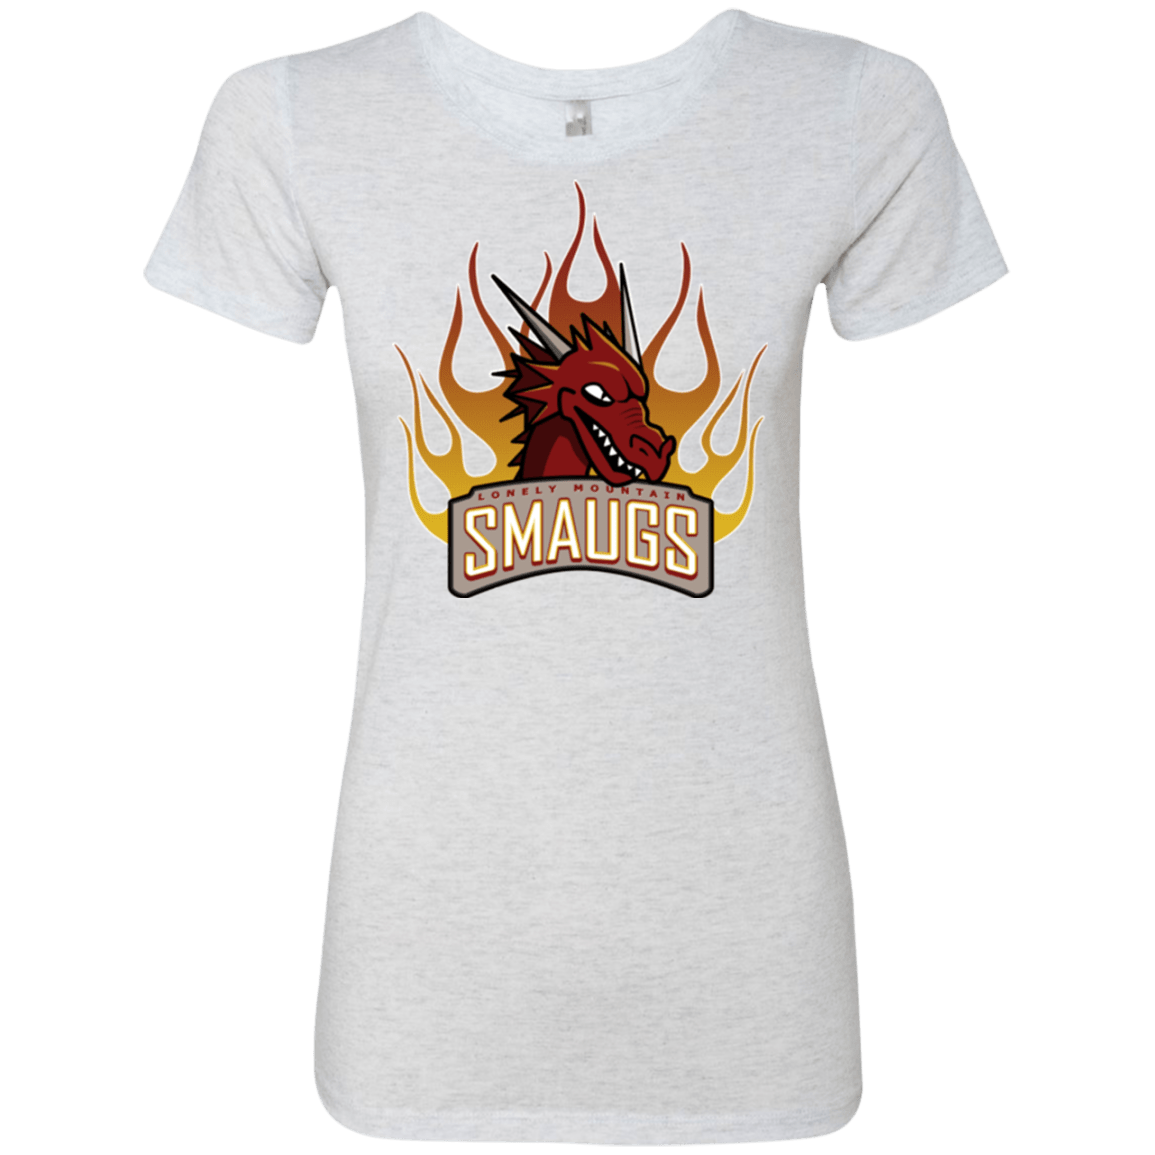 T-Shirts Heather White / Small Smaugs Women's Triblend T-Shirt